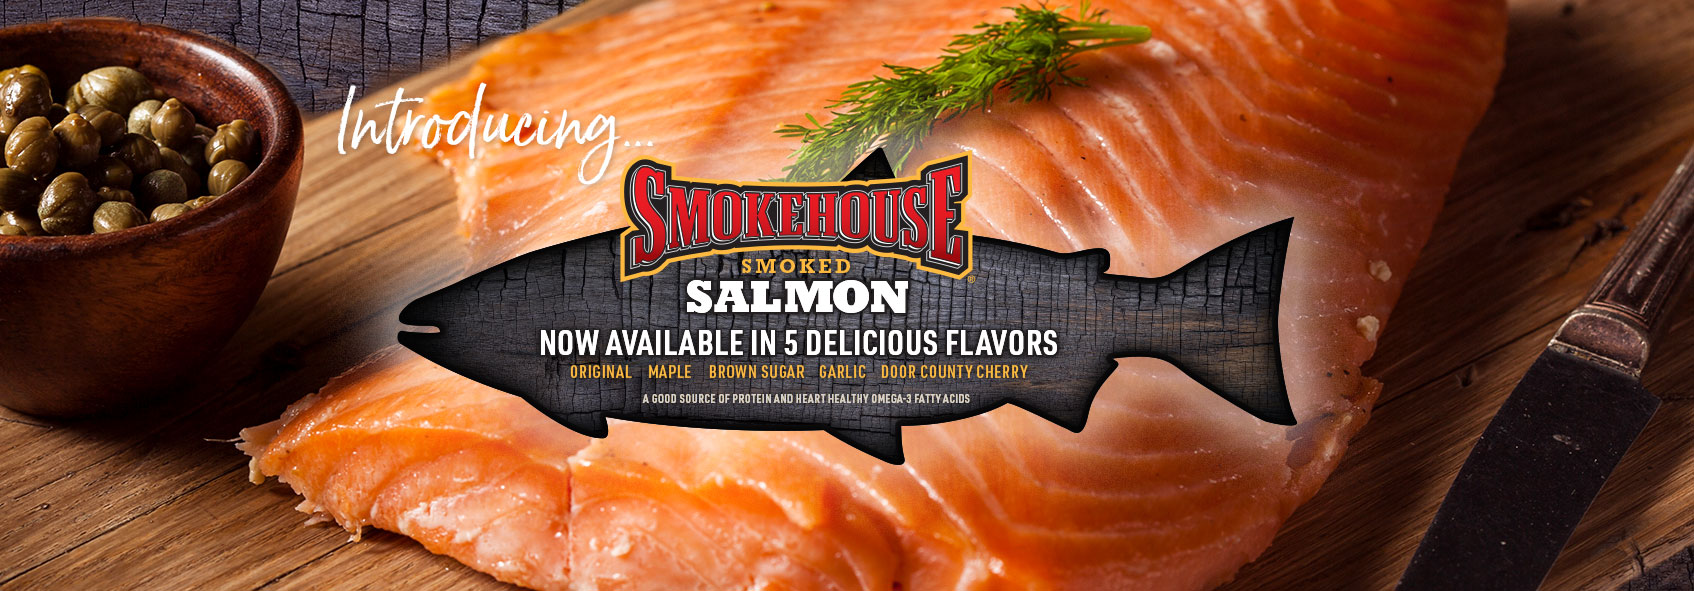 trigs-homepg-banner-intro-smokehouse-smoked-salmon.jpg